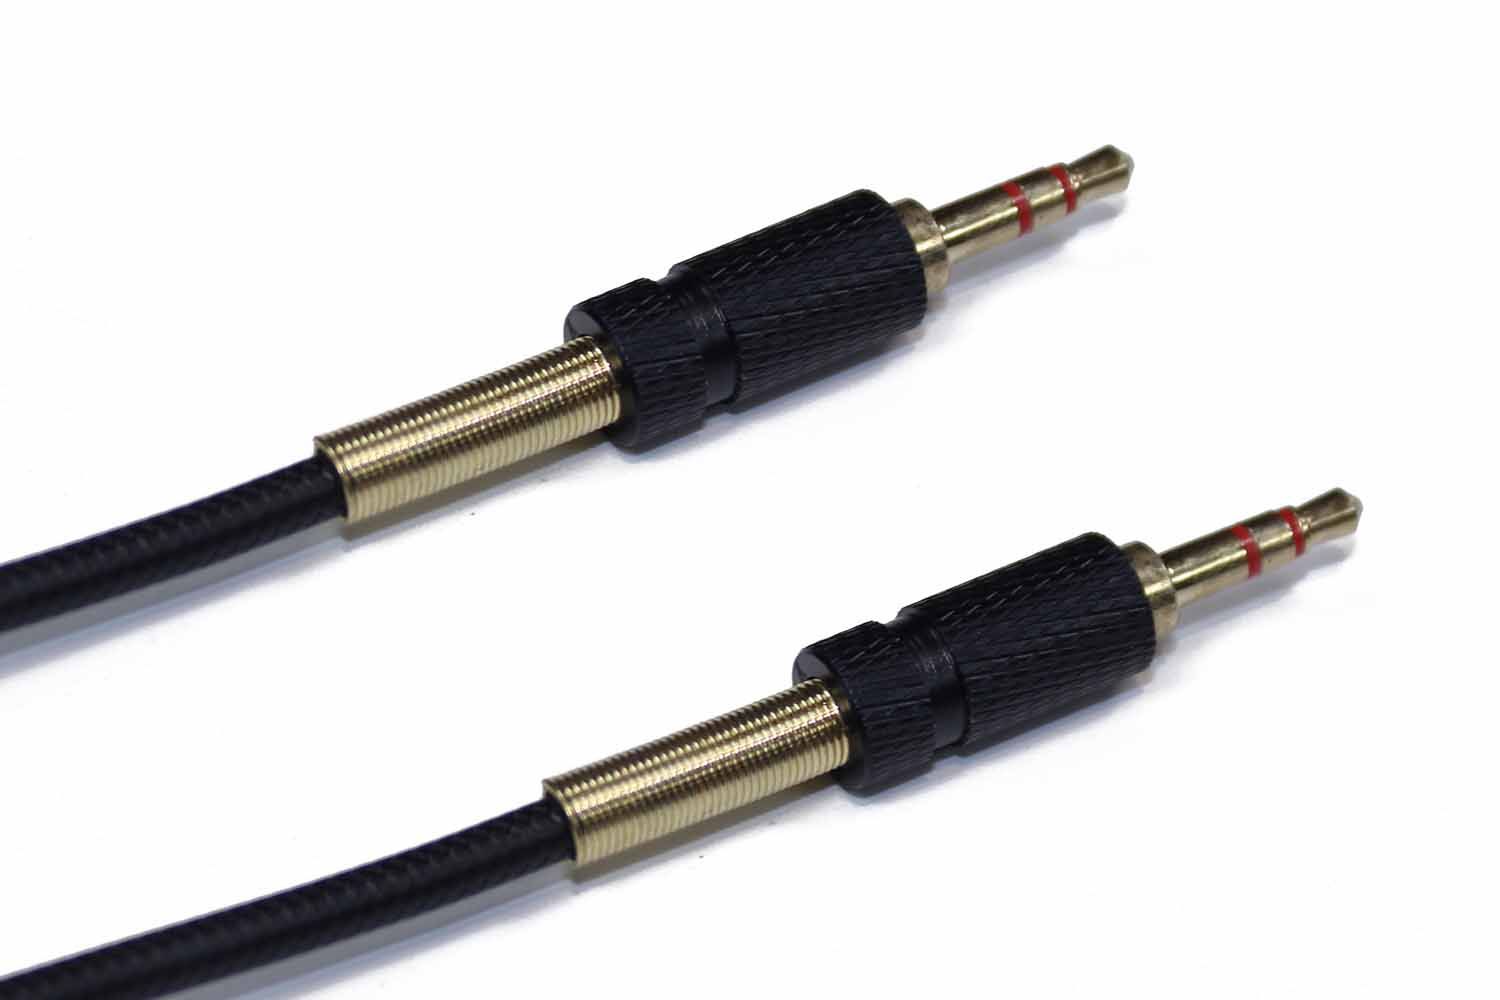 AUX кабель 3.5mm в кожаной оплетке папа-папа 1 метр (черный)